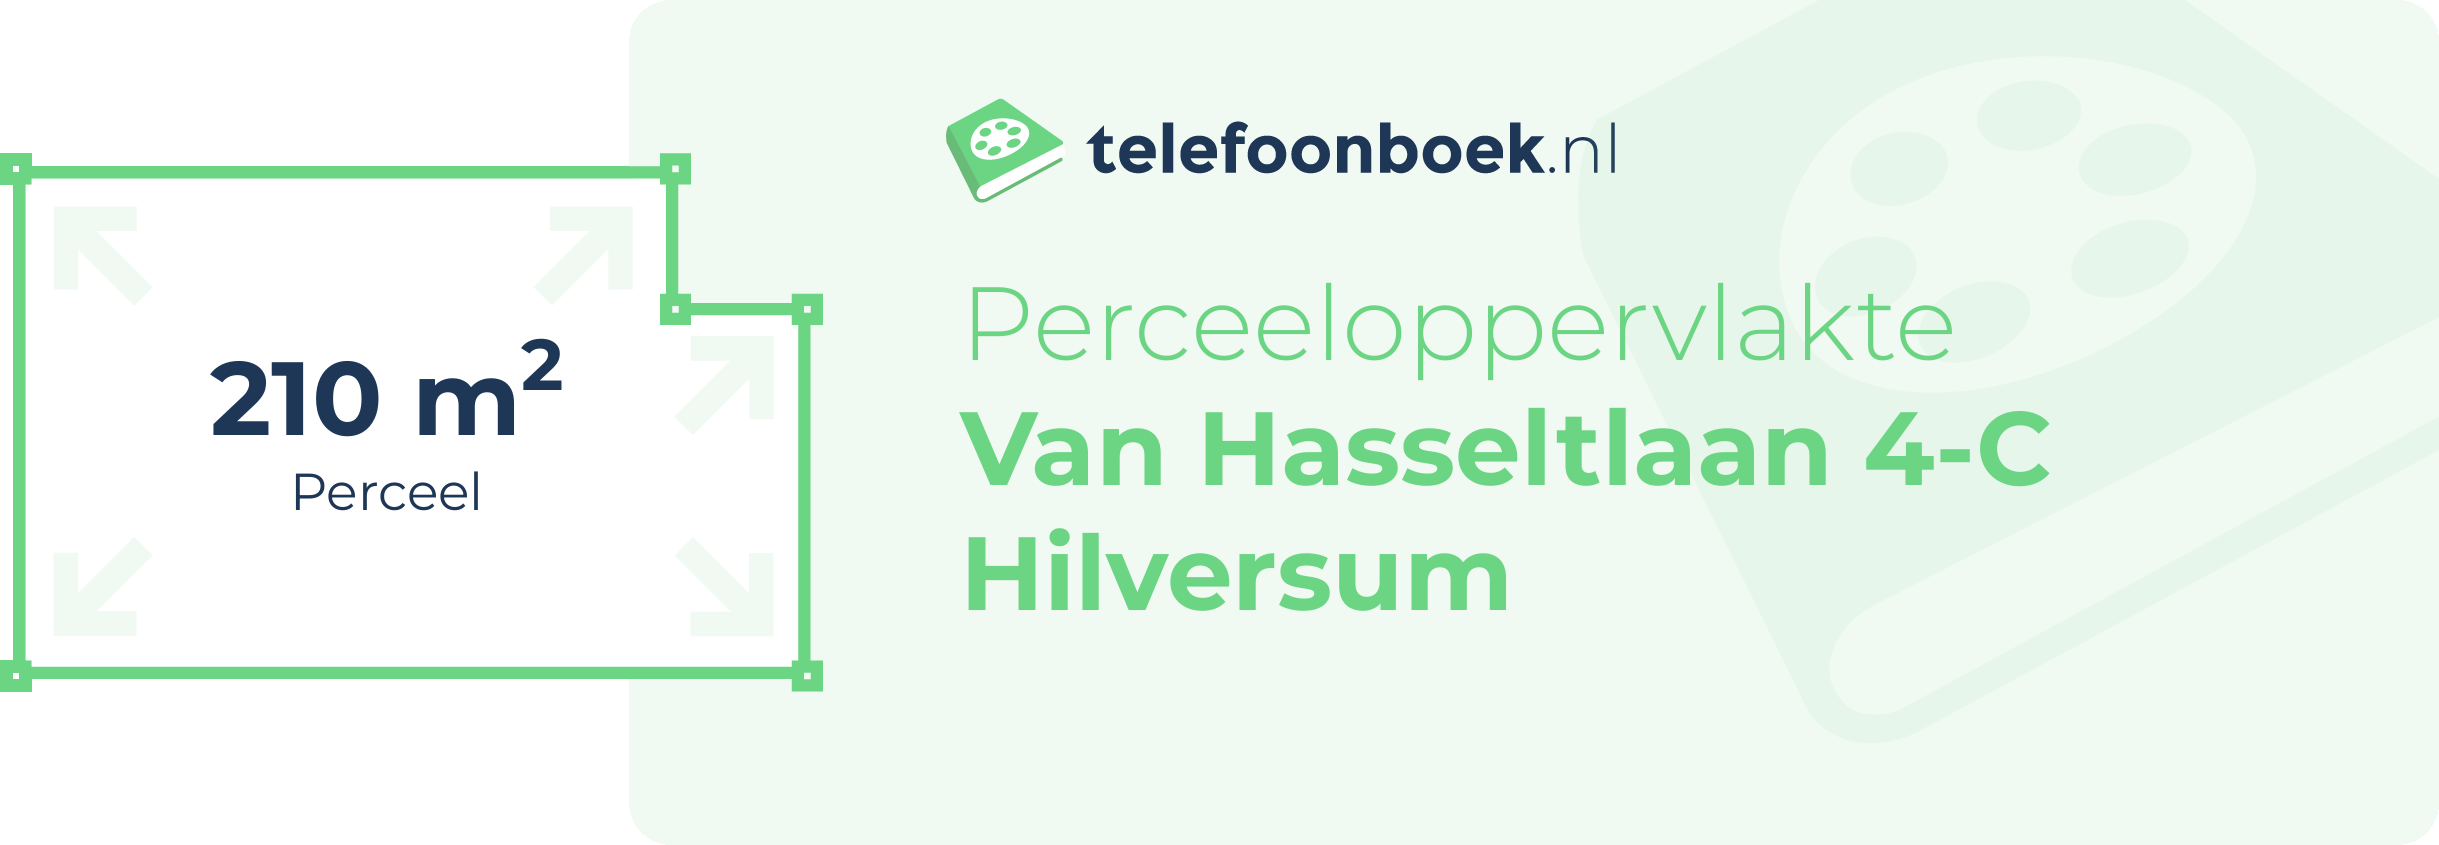 Perceeloppervlakte Van Hasseltlaan 4-C Hilversum